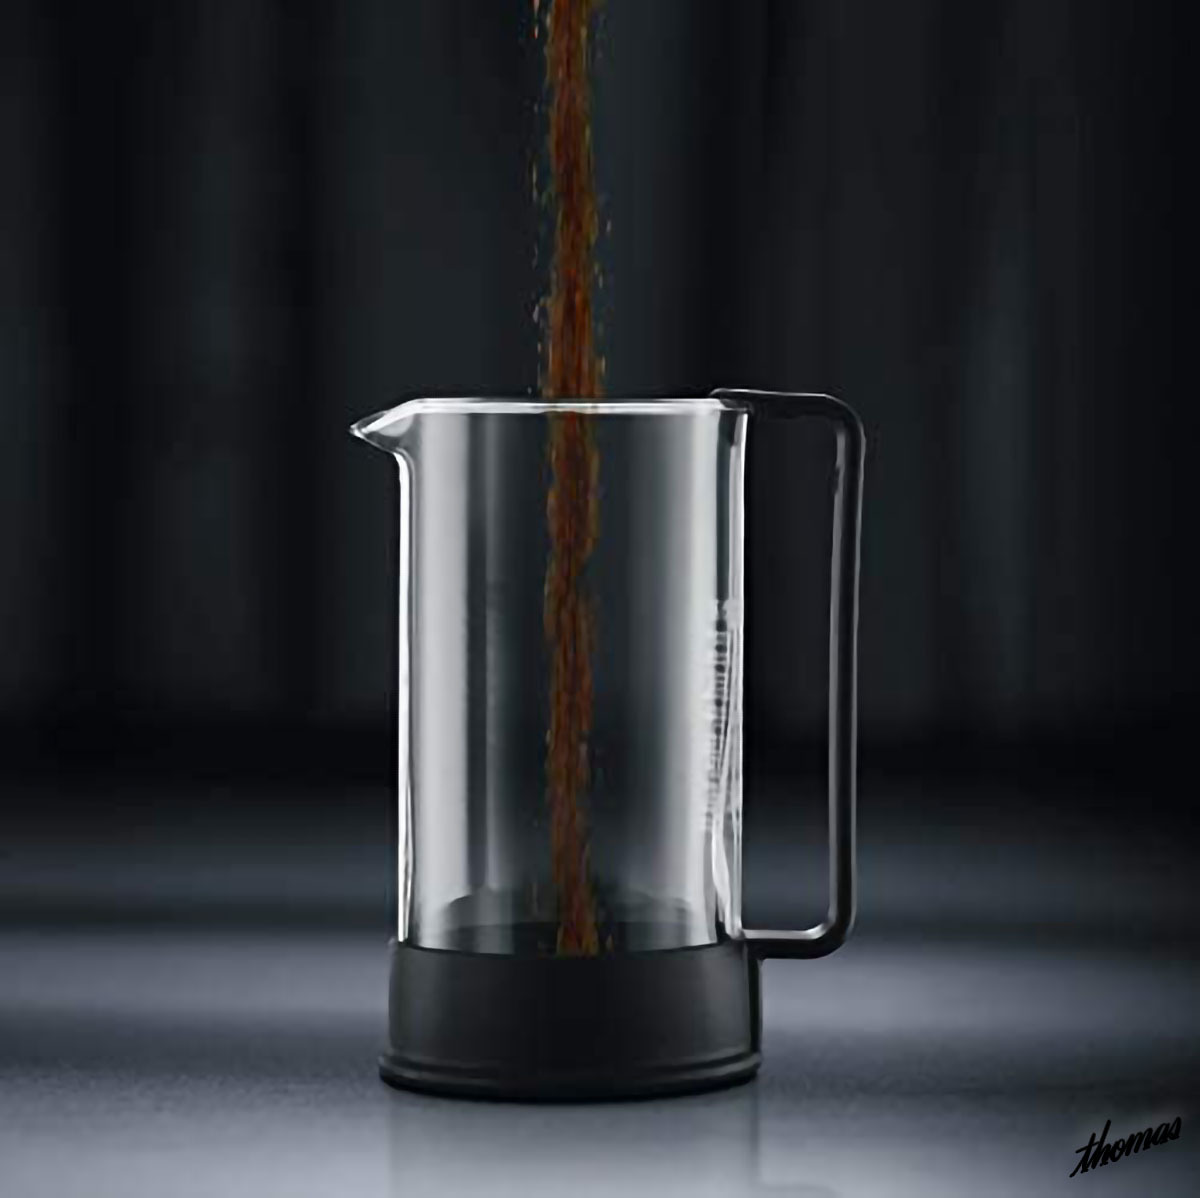 ◆誰でも簡単に本格コーヒーを淹れられる◆ フレンチプレス 350ml 2杯分 ステンレスフィルター コーヒーメーカー ペーパーレス ブラック